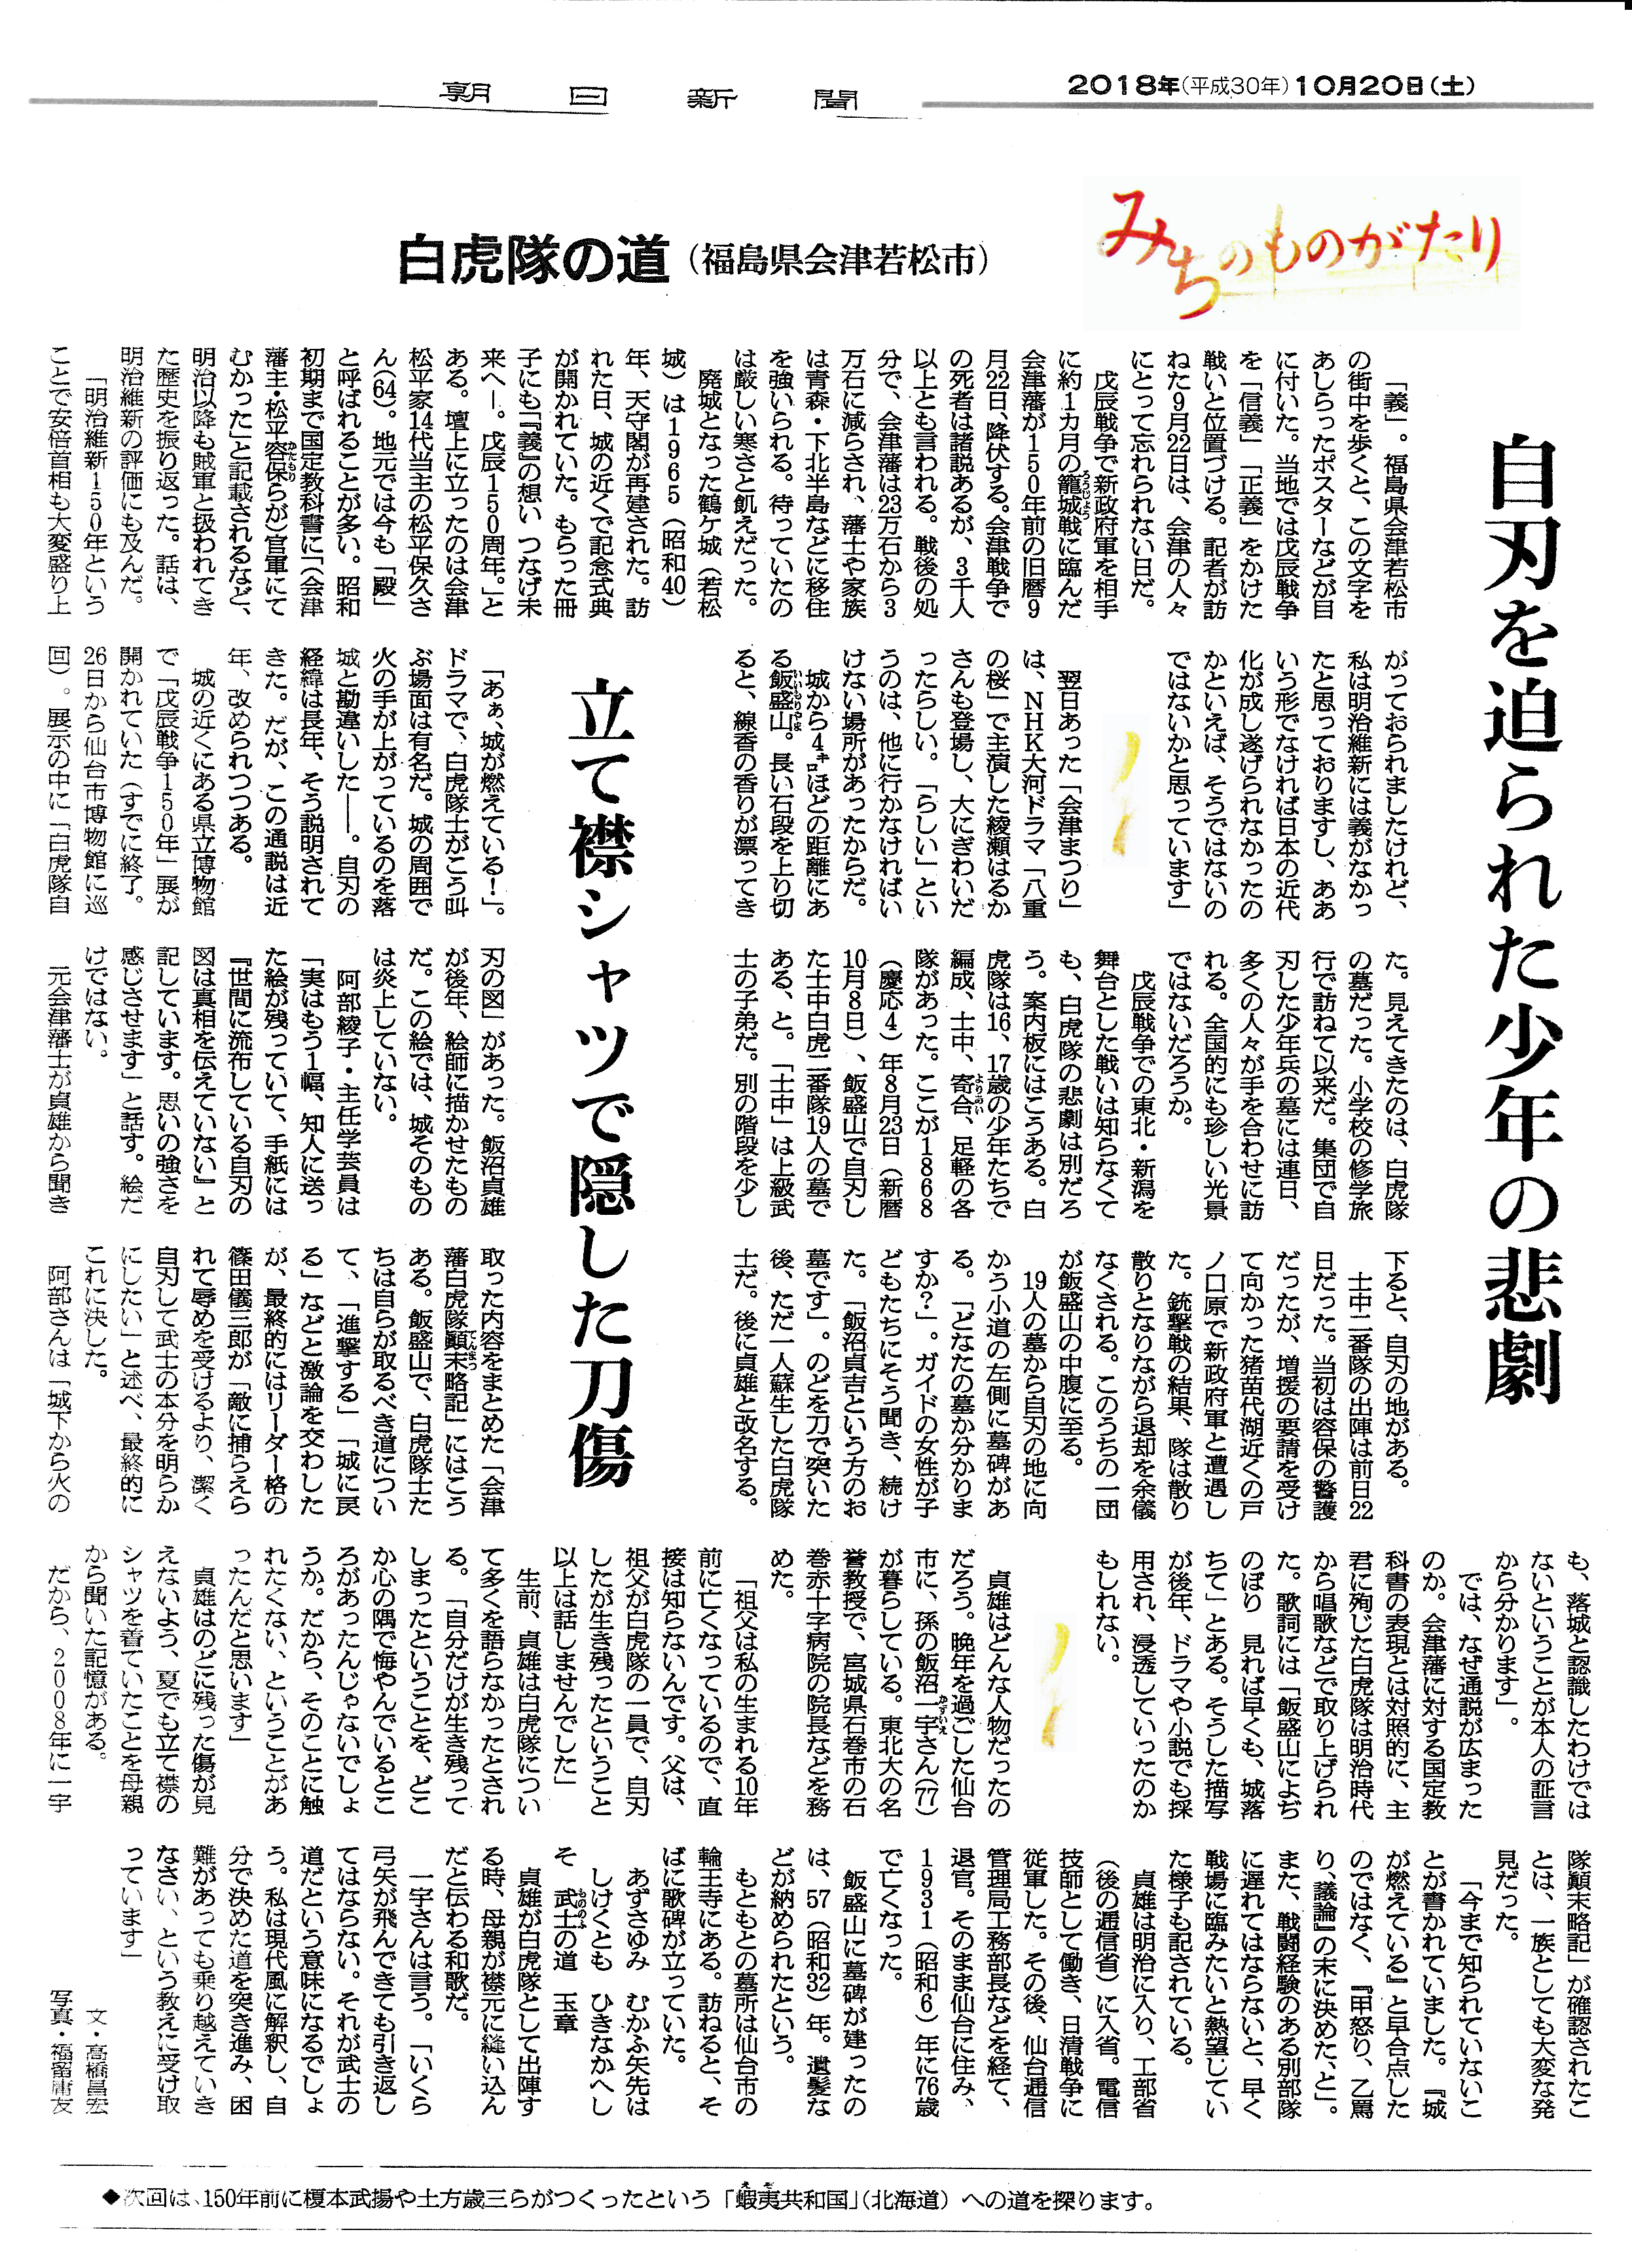 「朝日新聞」2018年10月20日 白虎隊の道(自刃を迫られた少年の悲劇)」